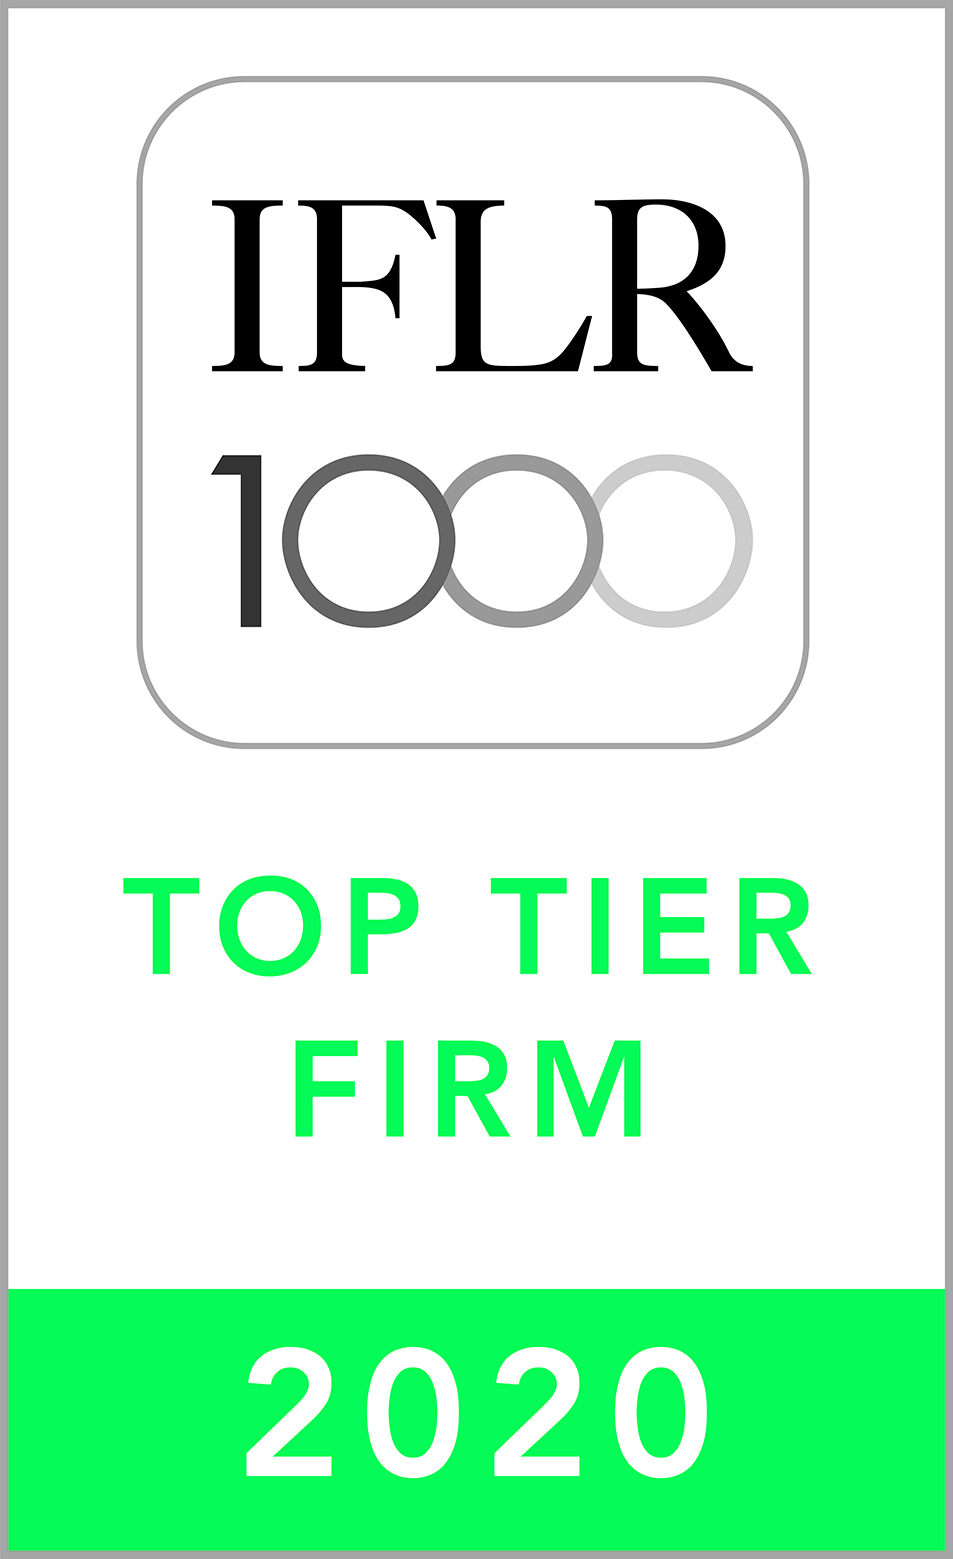 IFLR 1000 Top Tier Firm 2019